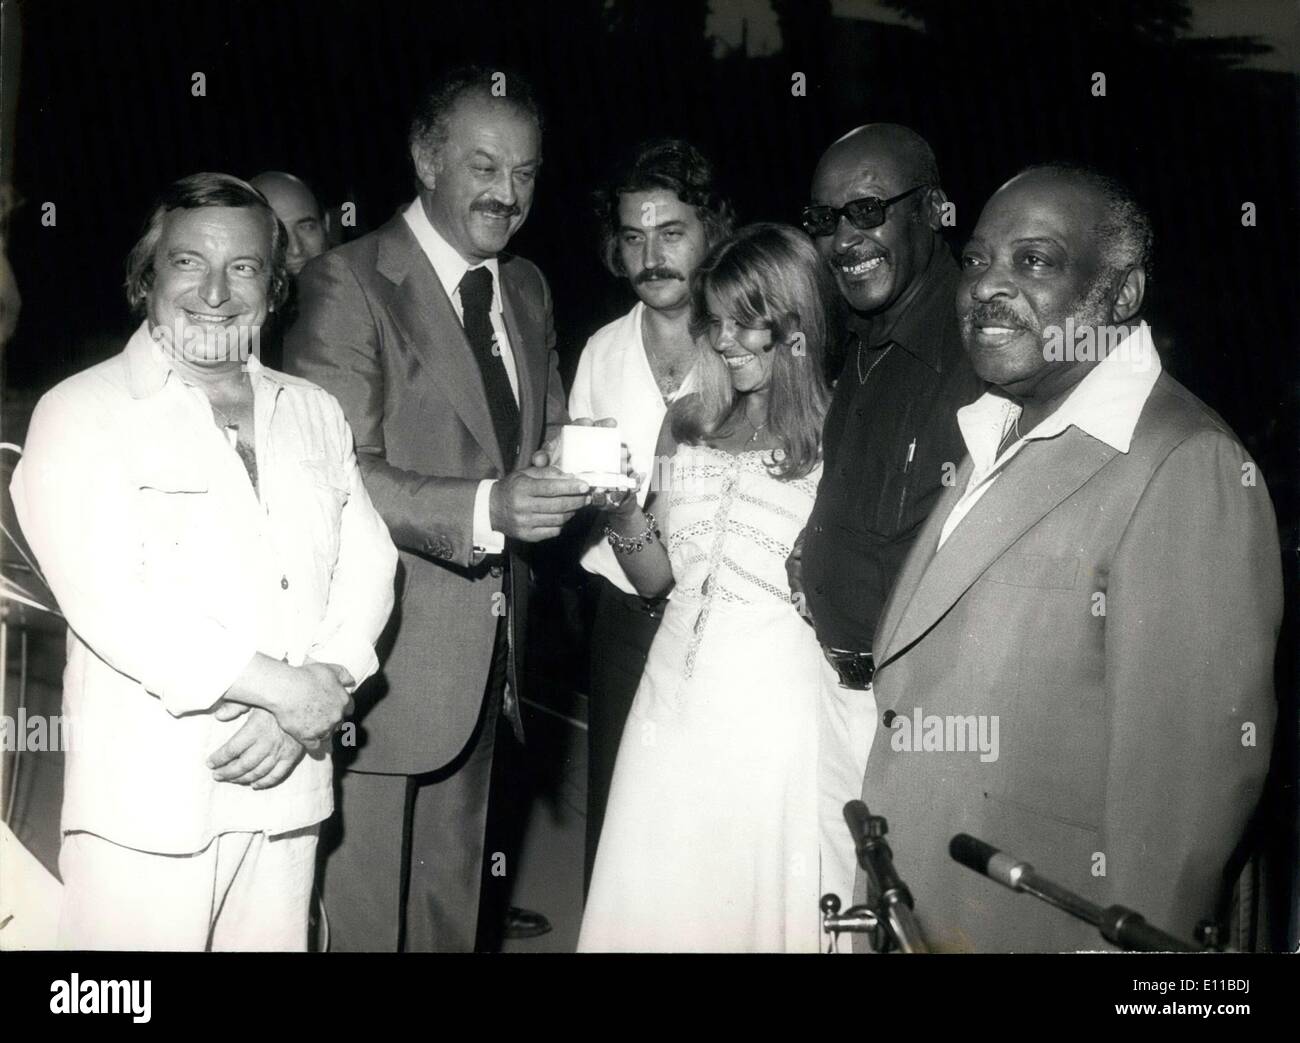 Juillet 13, 1976 - Mme Topiau est l'un des ''Locomotives''. Chalkitis a remporté le prix pour sa chanson ''Milady Lena''. Jacques Medecin, maire de Nice, et Claude Tabet, qui a organisé l'award show, sont à gauche. Count Basie, le célèbre musicien de jazz est à l'extrême droite. Banque D'Images